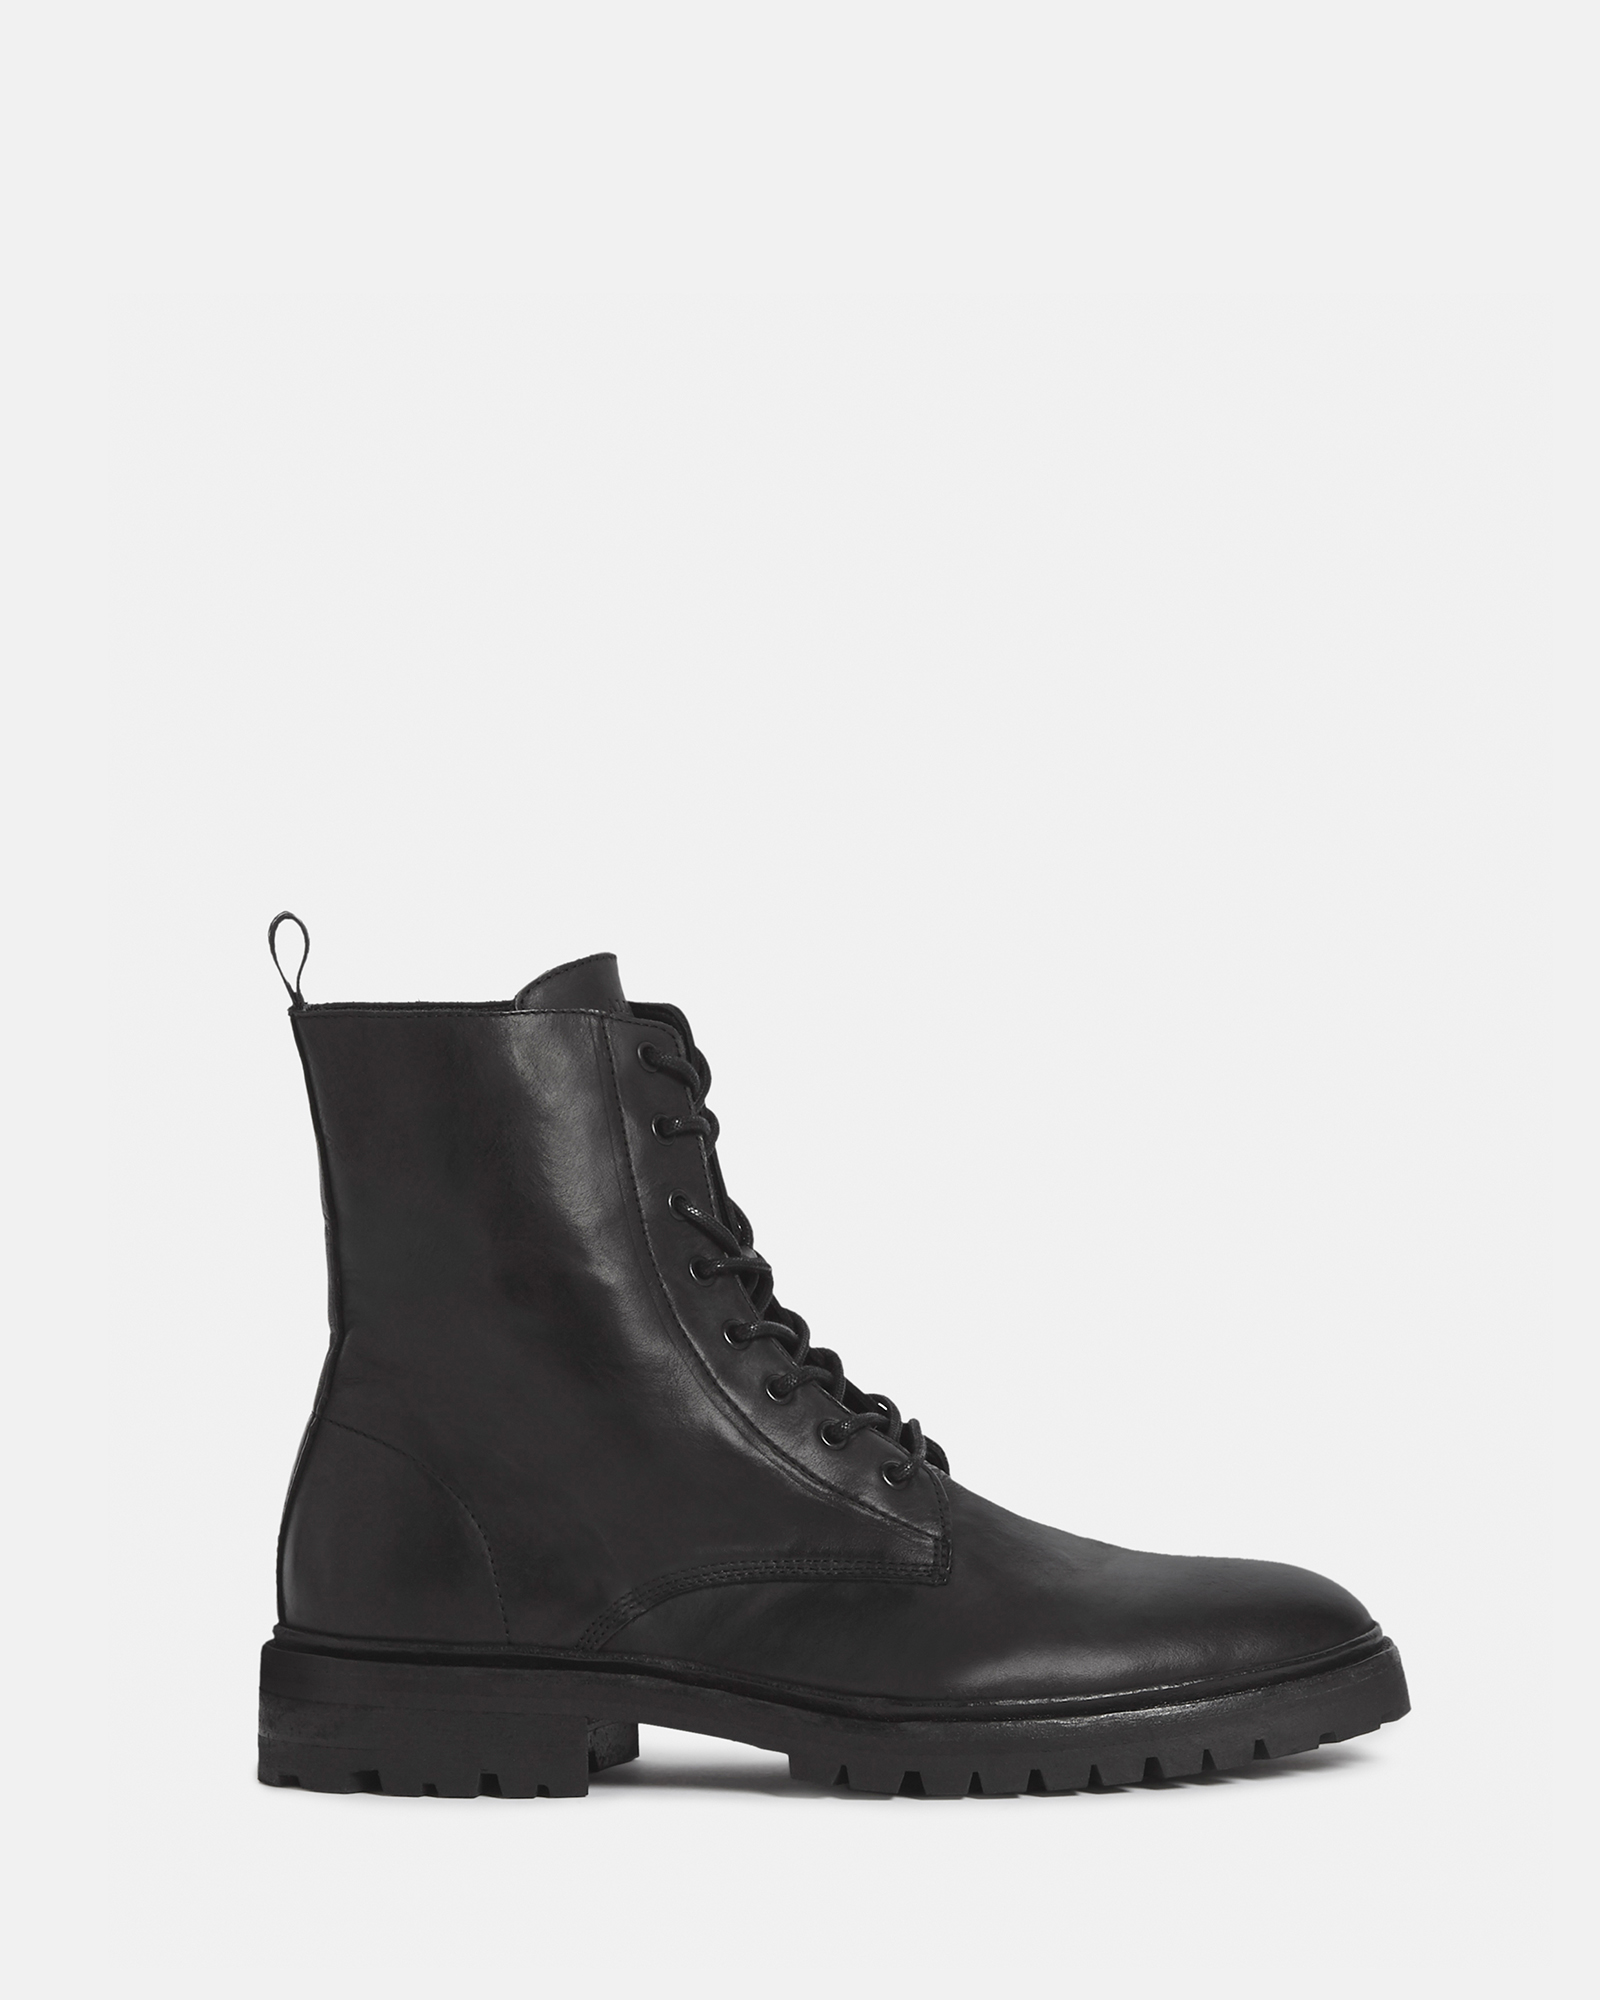 AllSaints Men's Tobias Boots, Black, Size: UK 12/US 13/EU 46